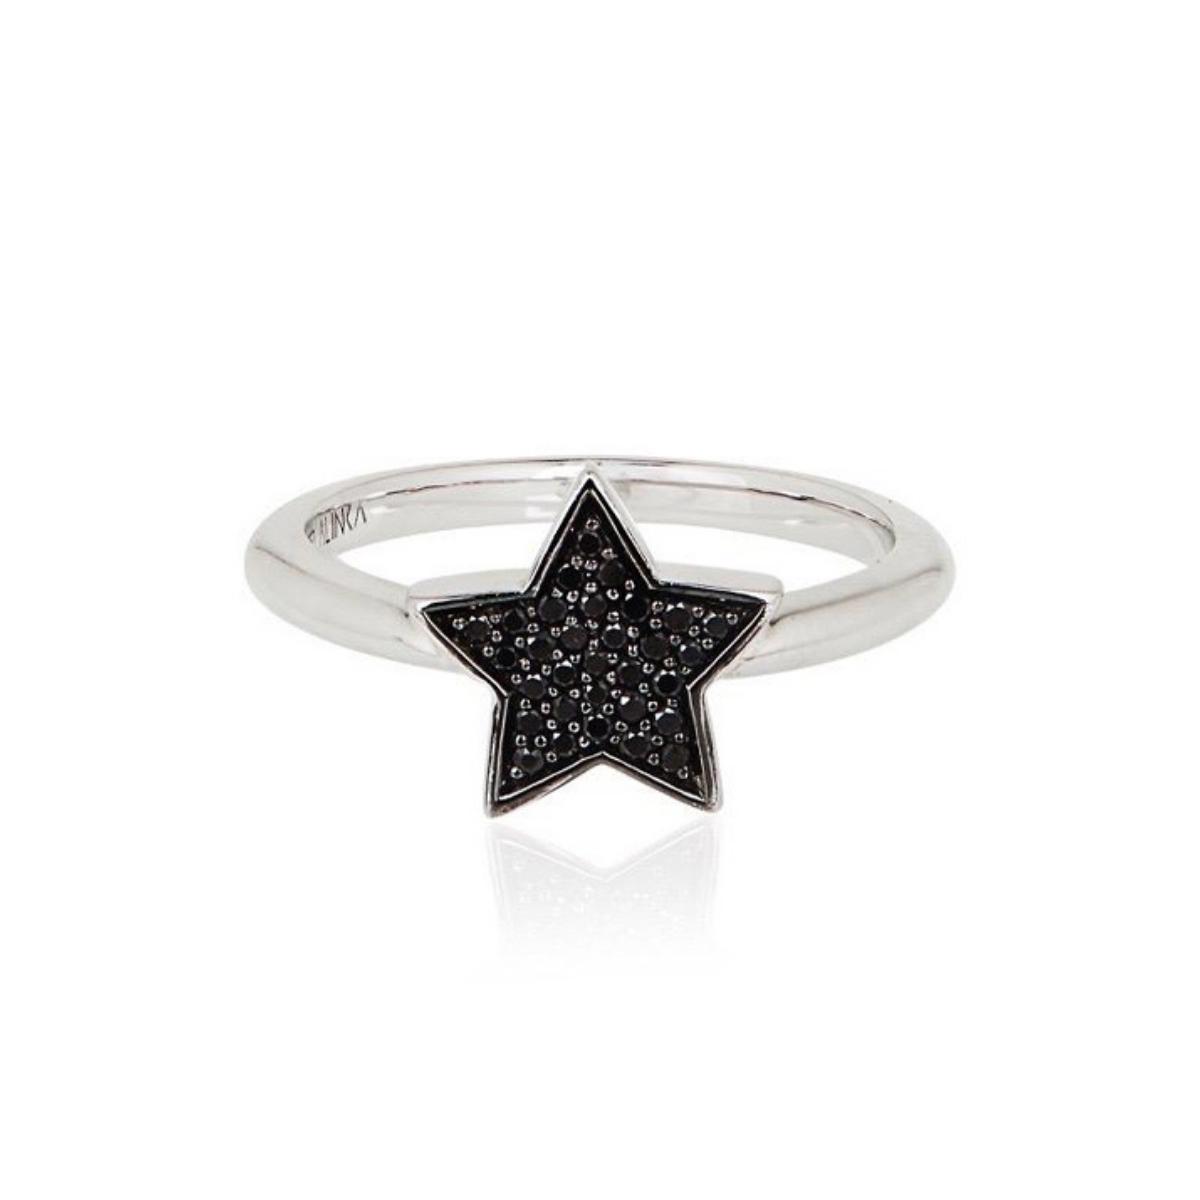 STASIA Single Star Black Diamond Ring